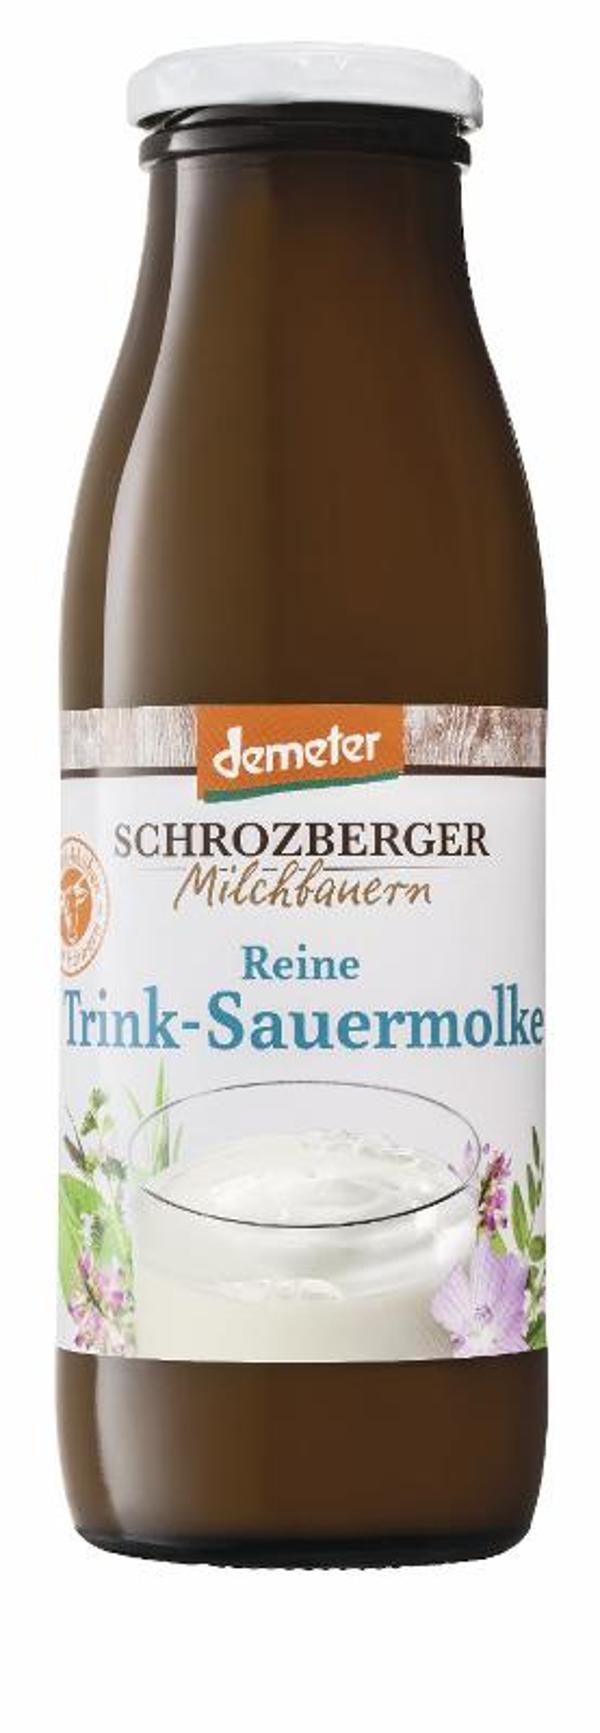 Produktfoto zu Reine Trink-Sauermolke 0,5l